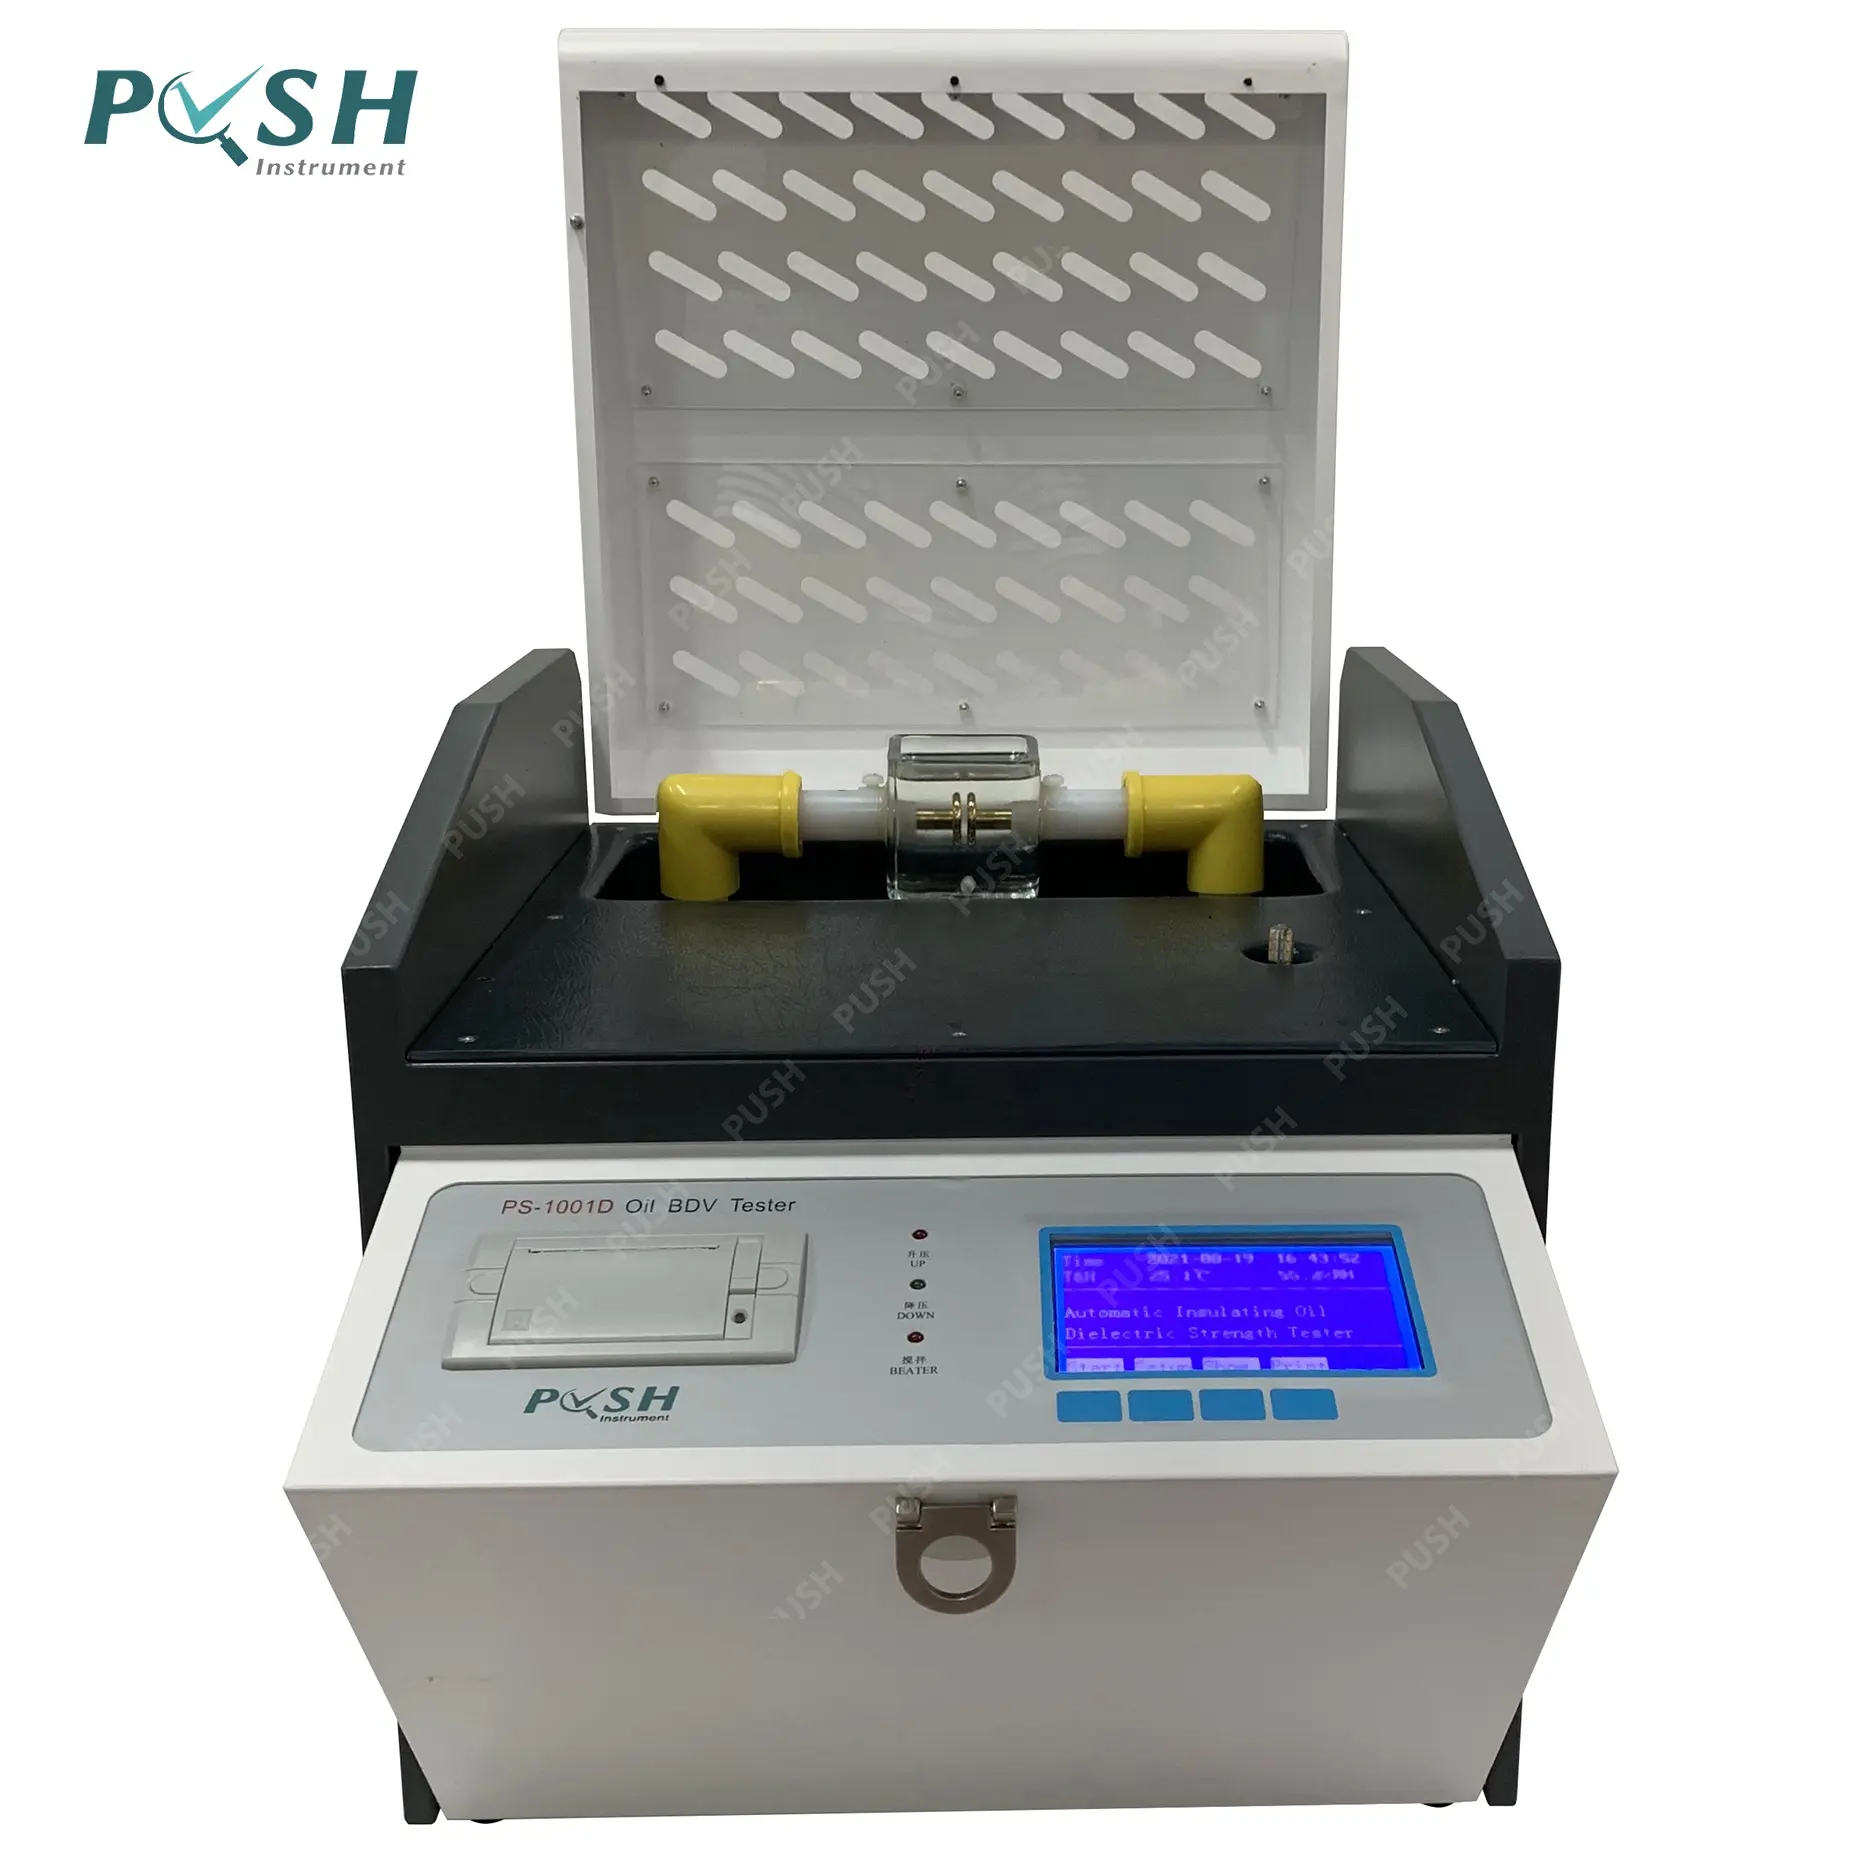 Dispositivo de medição do óleo bdv, instrumento de teste elétrico de empurrar, transformador de medição automática